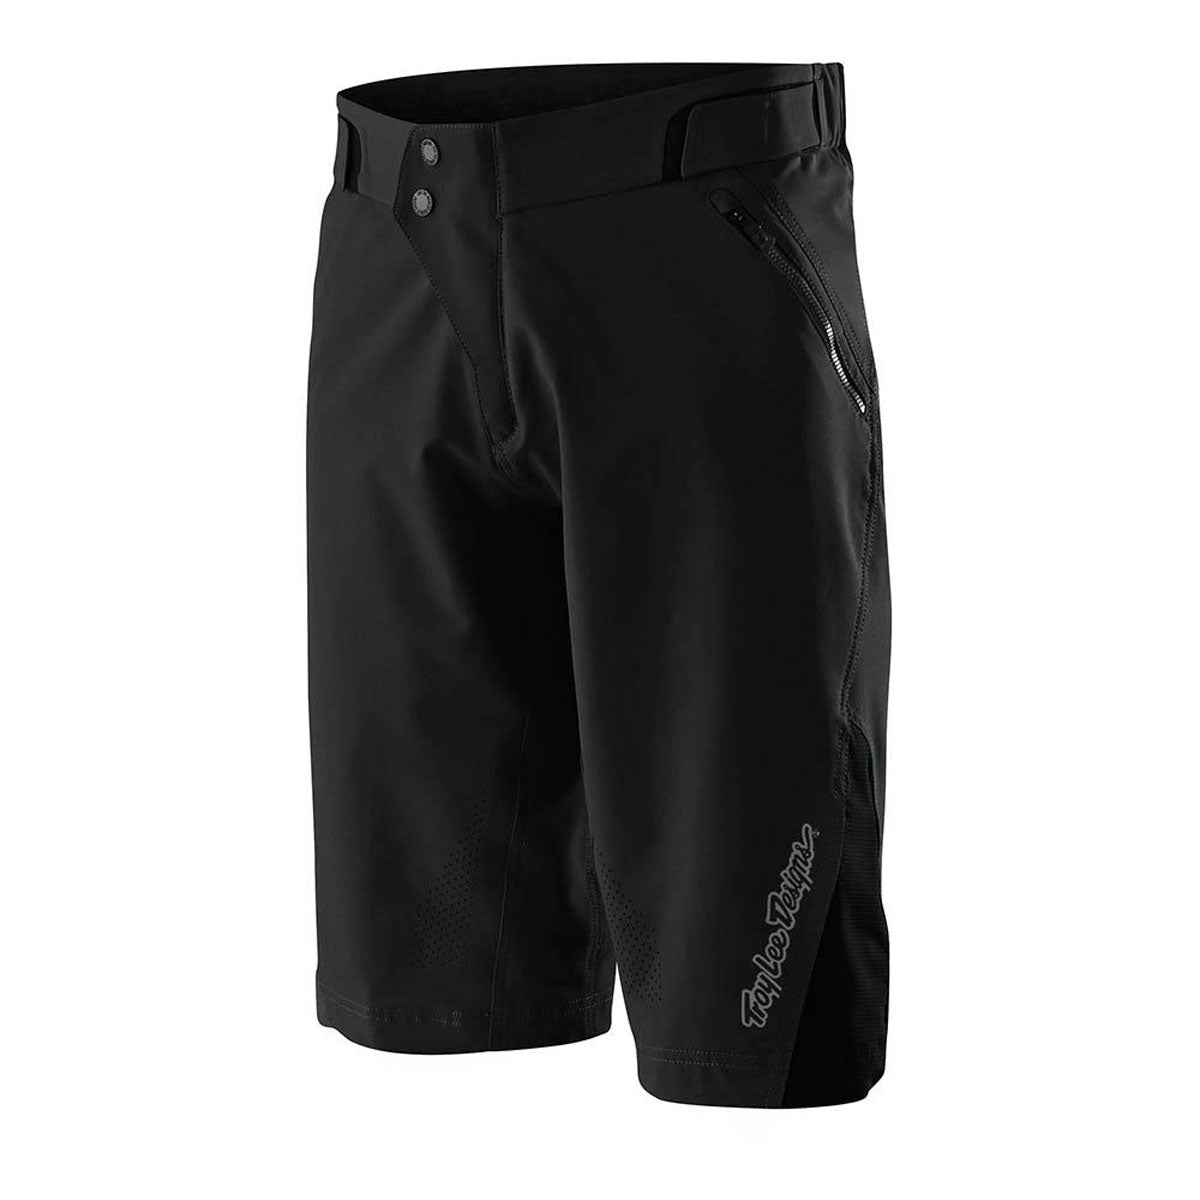 Troy Lee Designs Ruckus Shorts W/ Liner - Black 